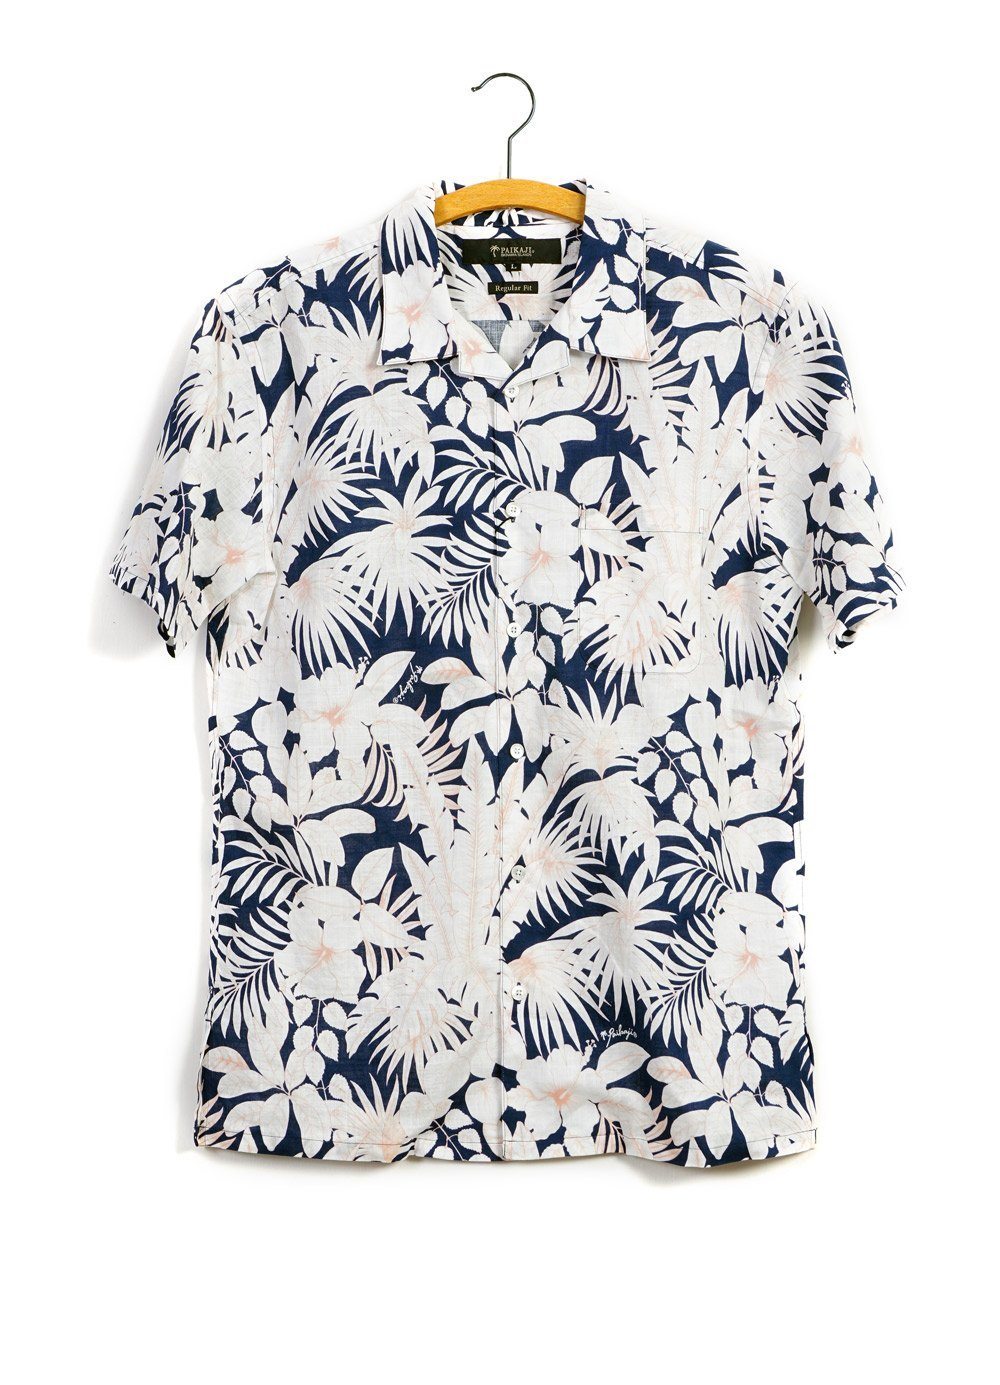 FLORAL | Short Sleeve Shirt | Navy Orange | 215€ -PAIKAJI- HANSEN Garments